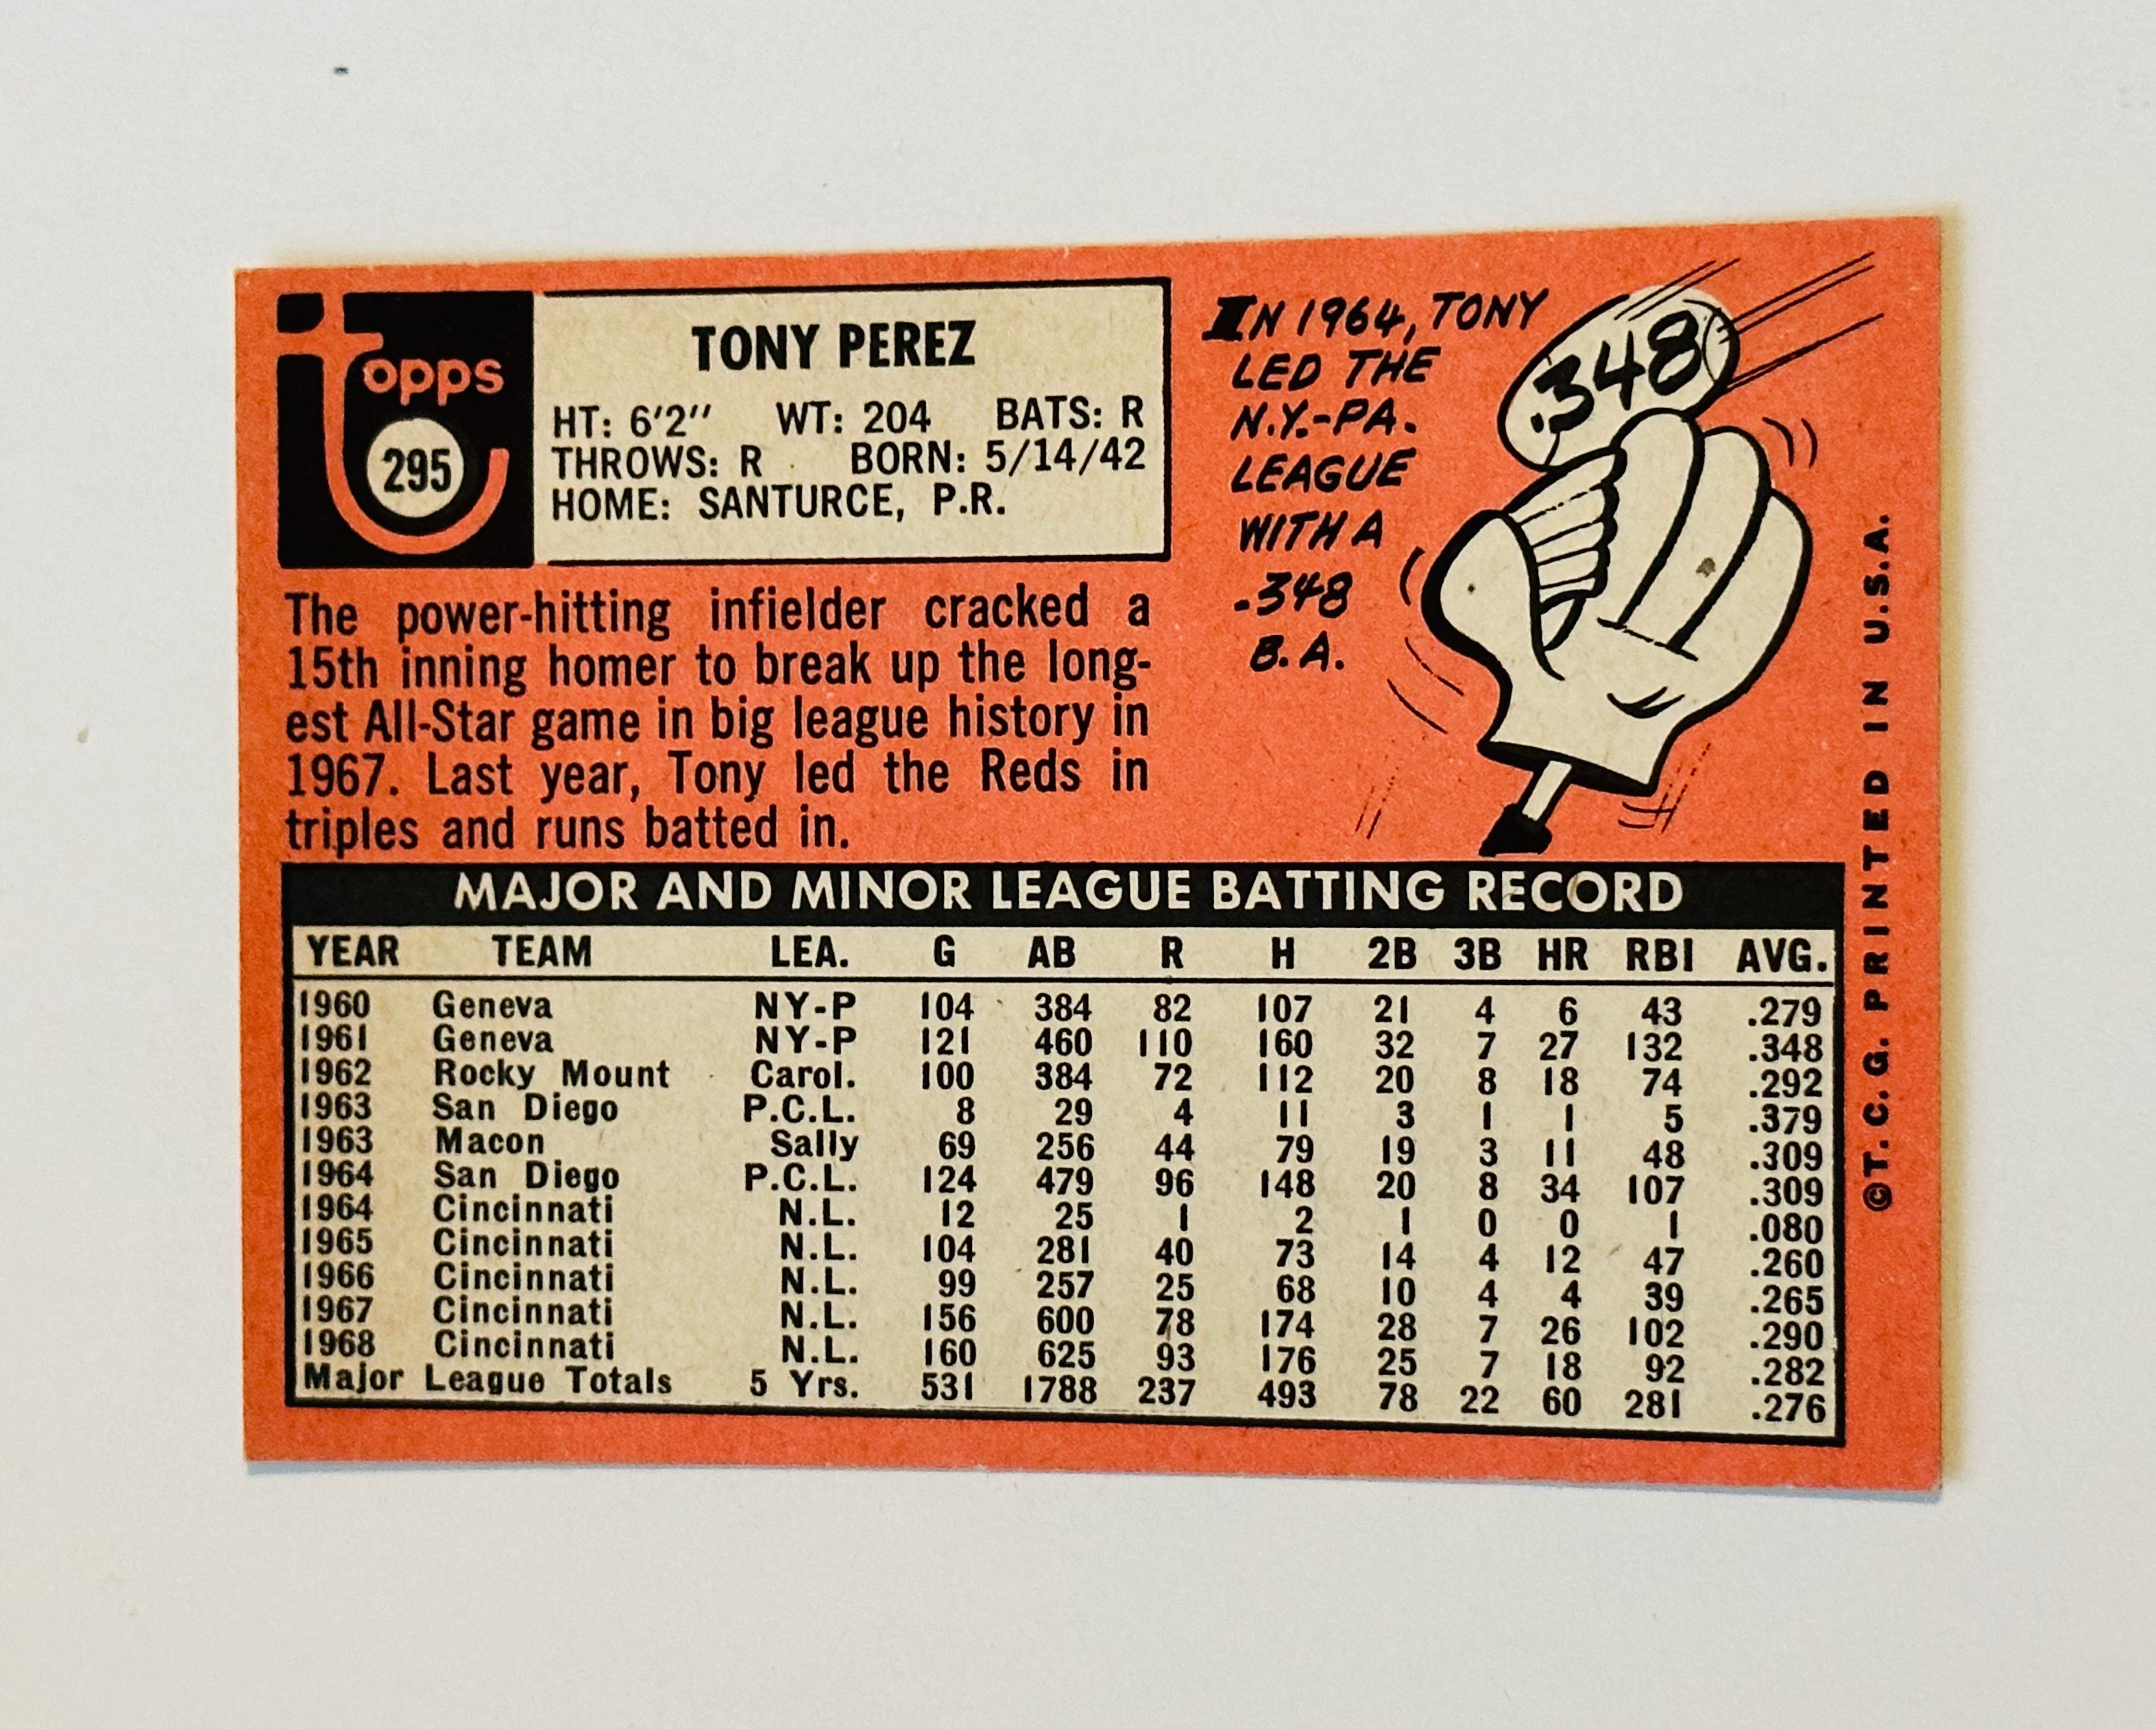 1969 Tony Perez high grade NM baseball card